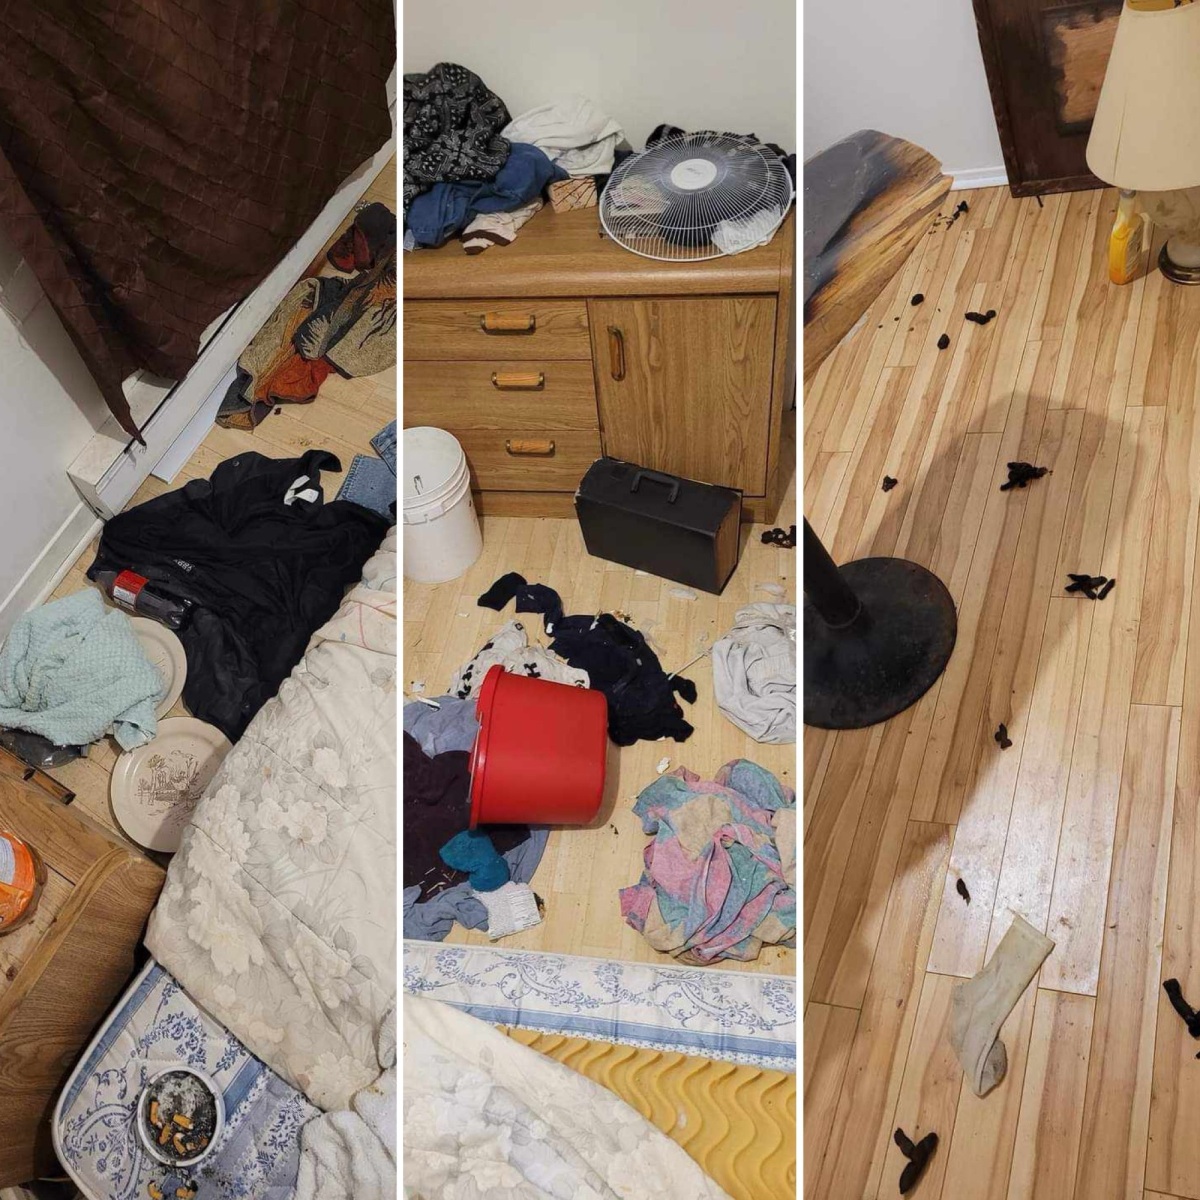 [IMAGES] Un logement est laissé en très mauvais état à Shawinigan